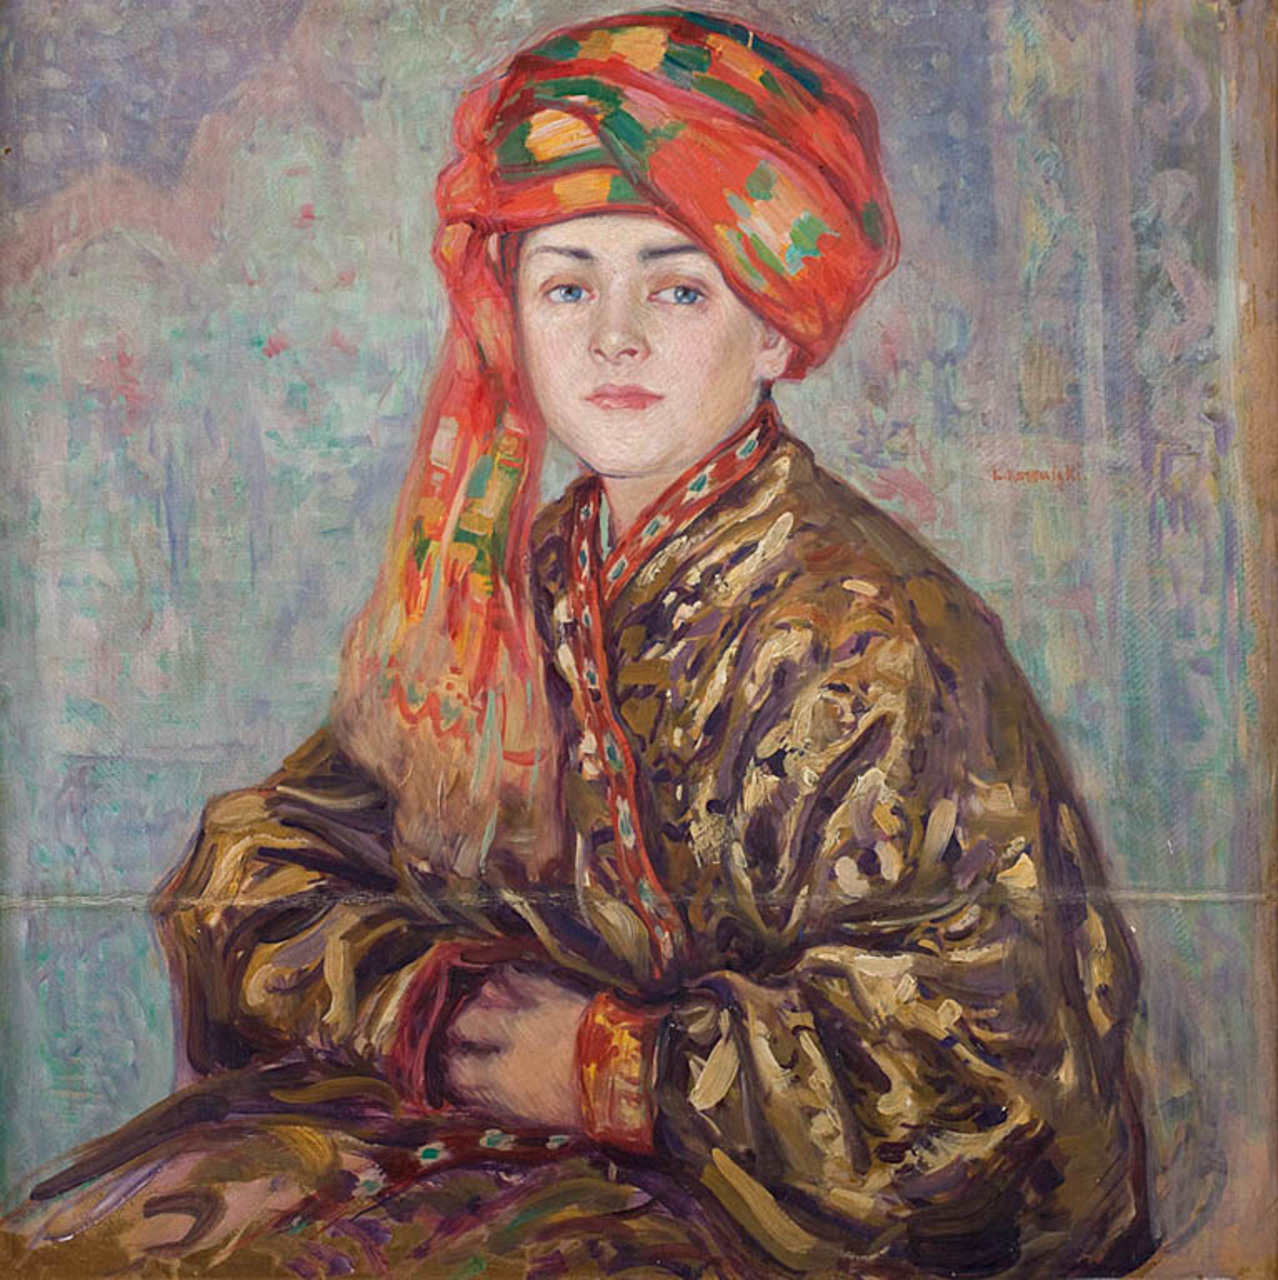 Leon Kowalski (1870-1937), "Portret żony artysty w stroju bucharskim", źródło: Polswiss Art